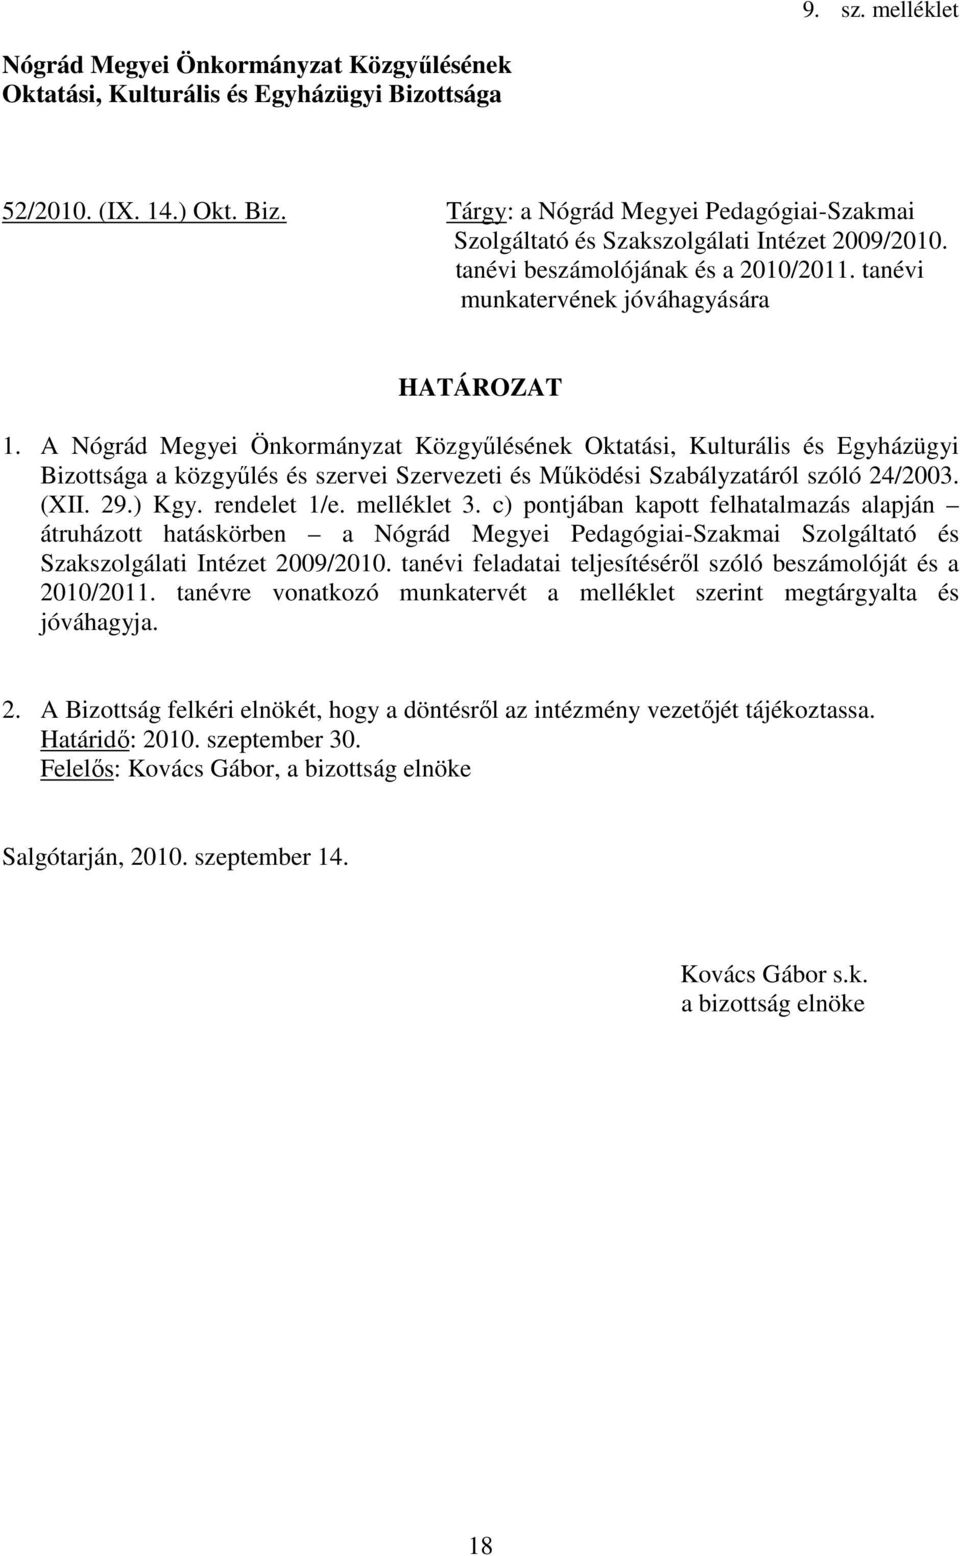 A Nógrád Megyei Önkormányzat Közgyűlésének Oktatási, Kulturális és Egyházügyi Bizottsága a közgyűlés és szervei Szervezeti és Működési Szabályzatáról szóló 24/2003. (XII. 29.) Kgy. rendelet 1/e.